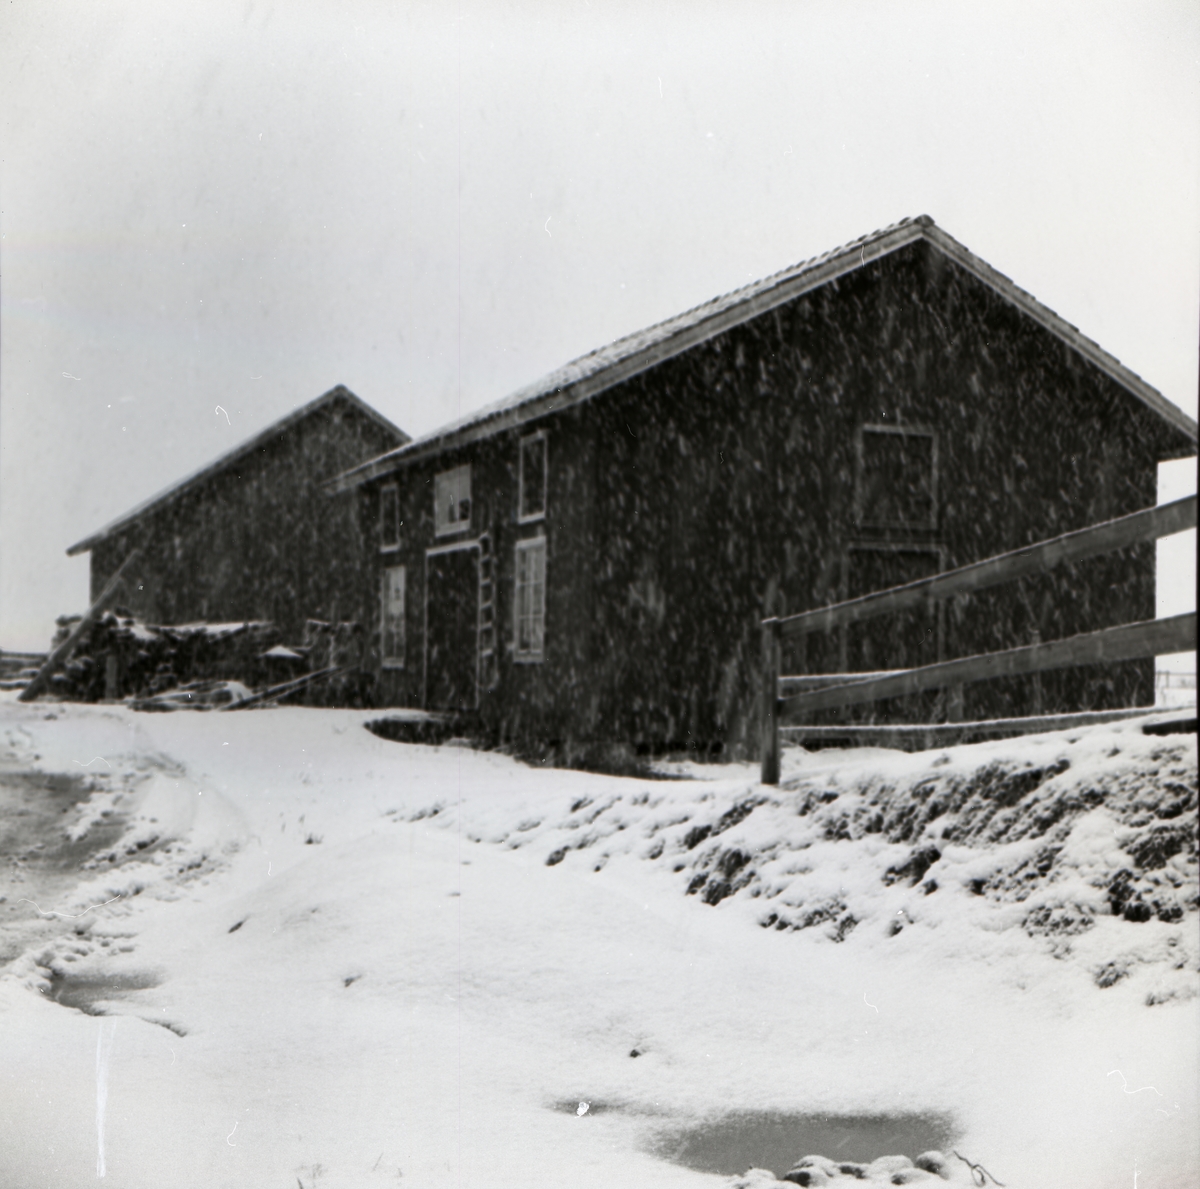 Snöfall vid två byggnader, varav den ena är ett slakteri, i december 1955.